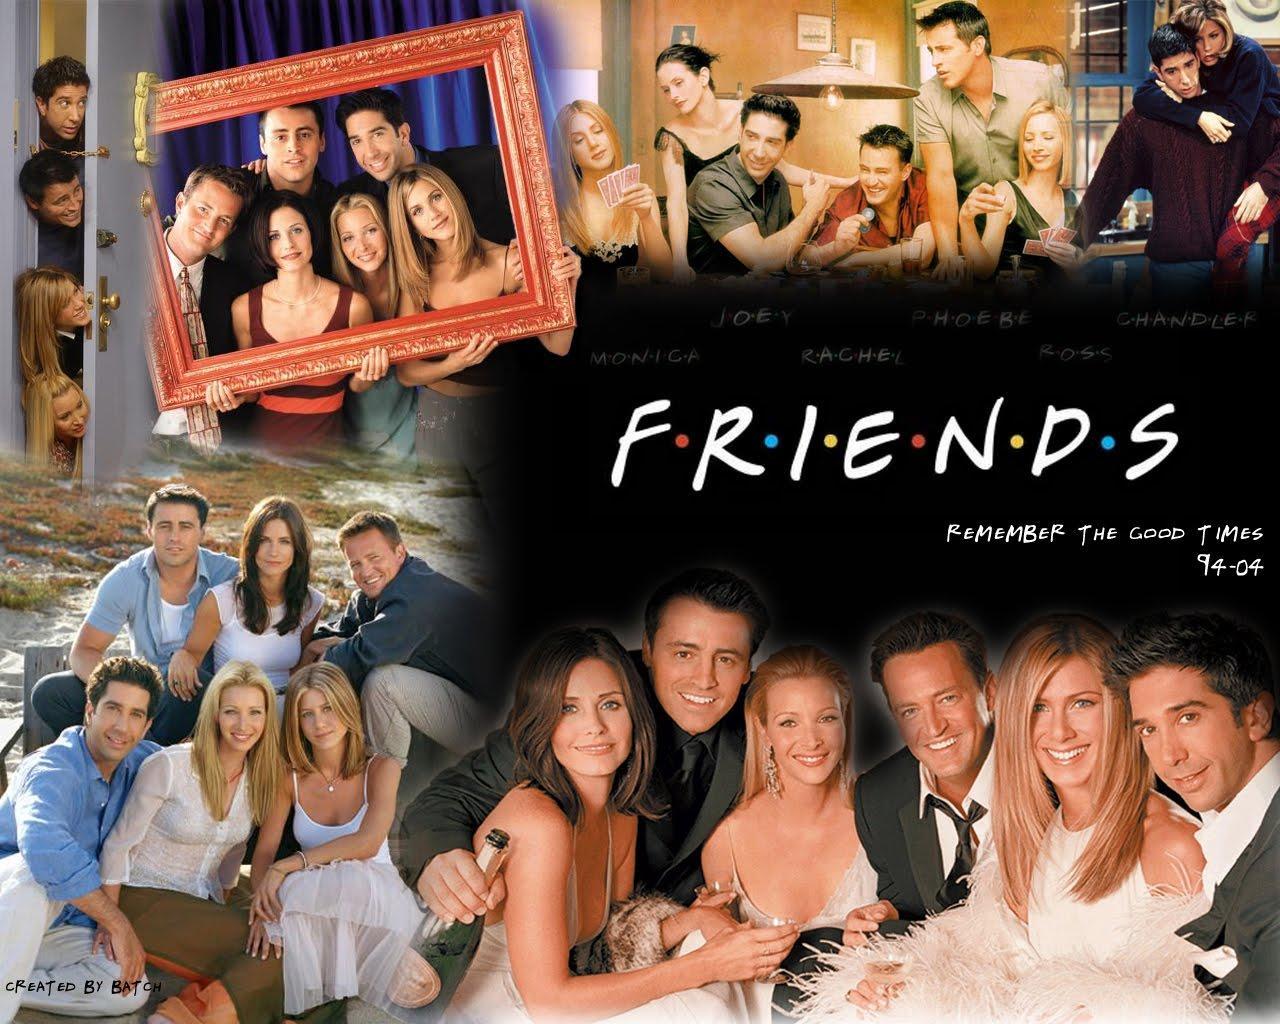 Friends TV Show Wallpaper Free Friends TV Show